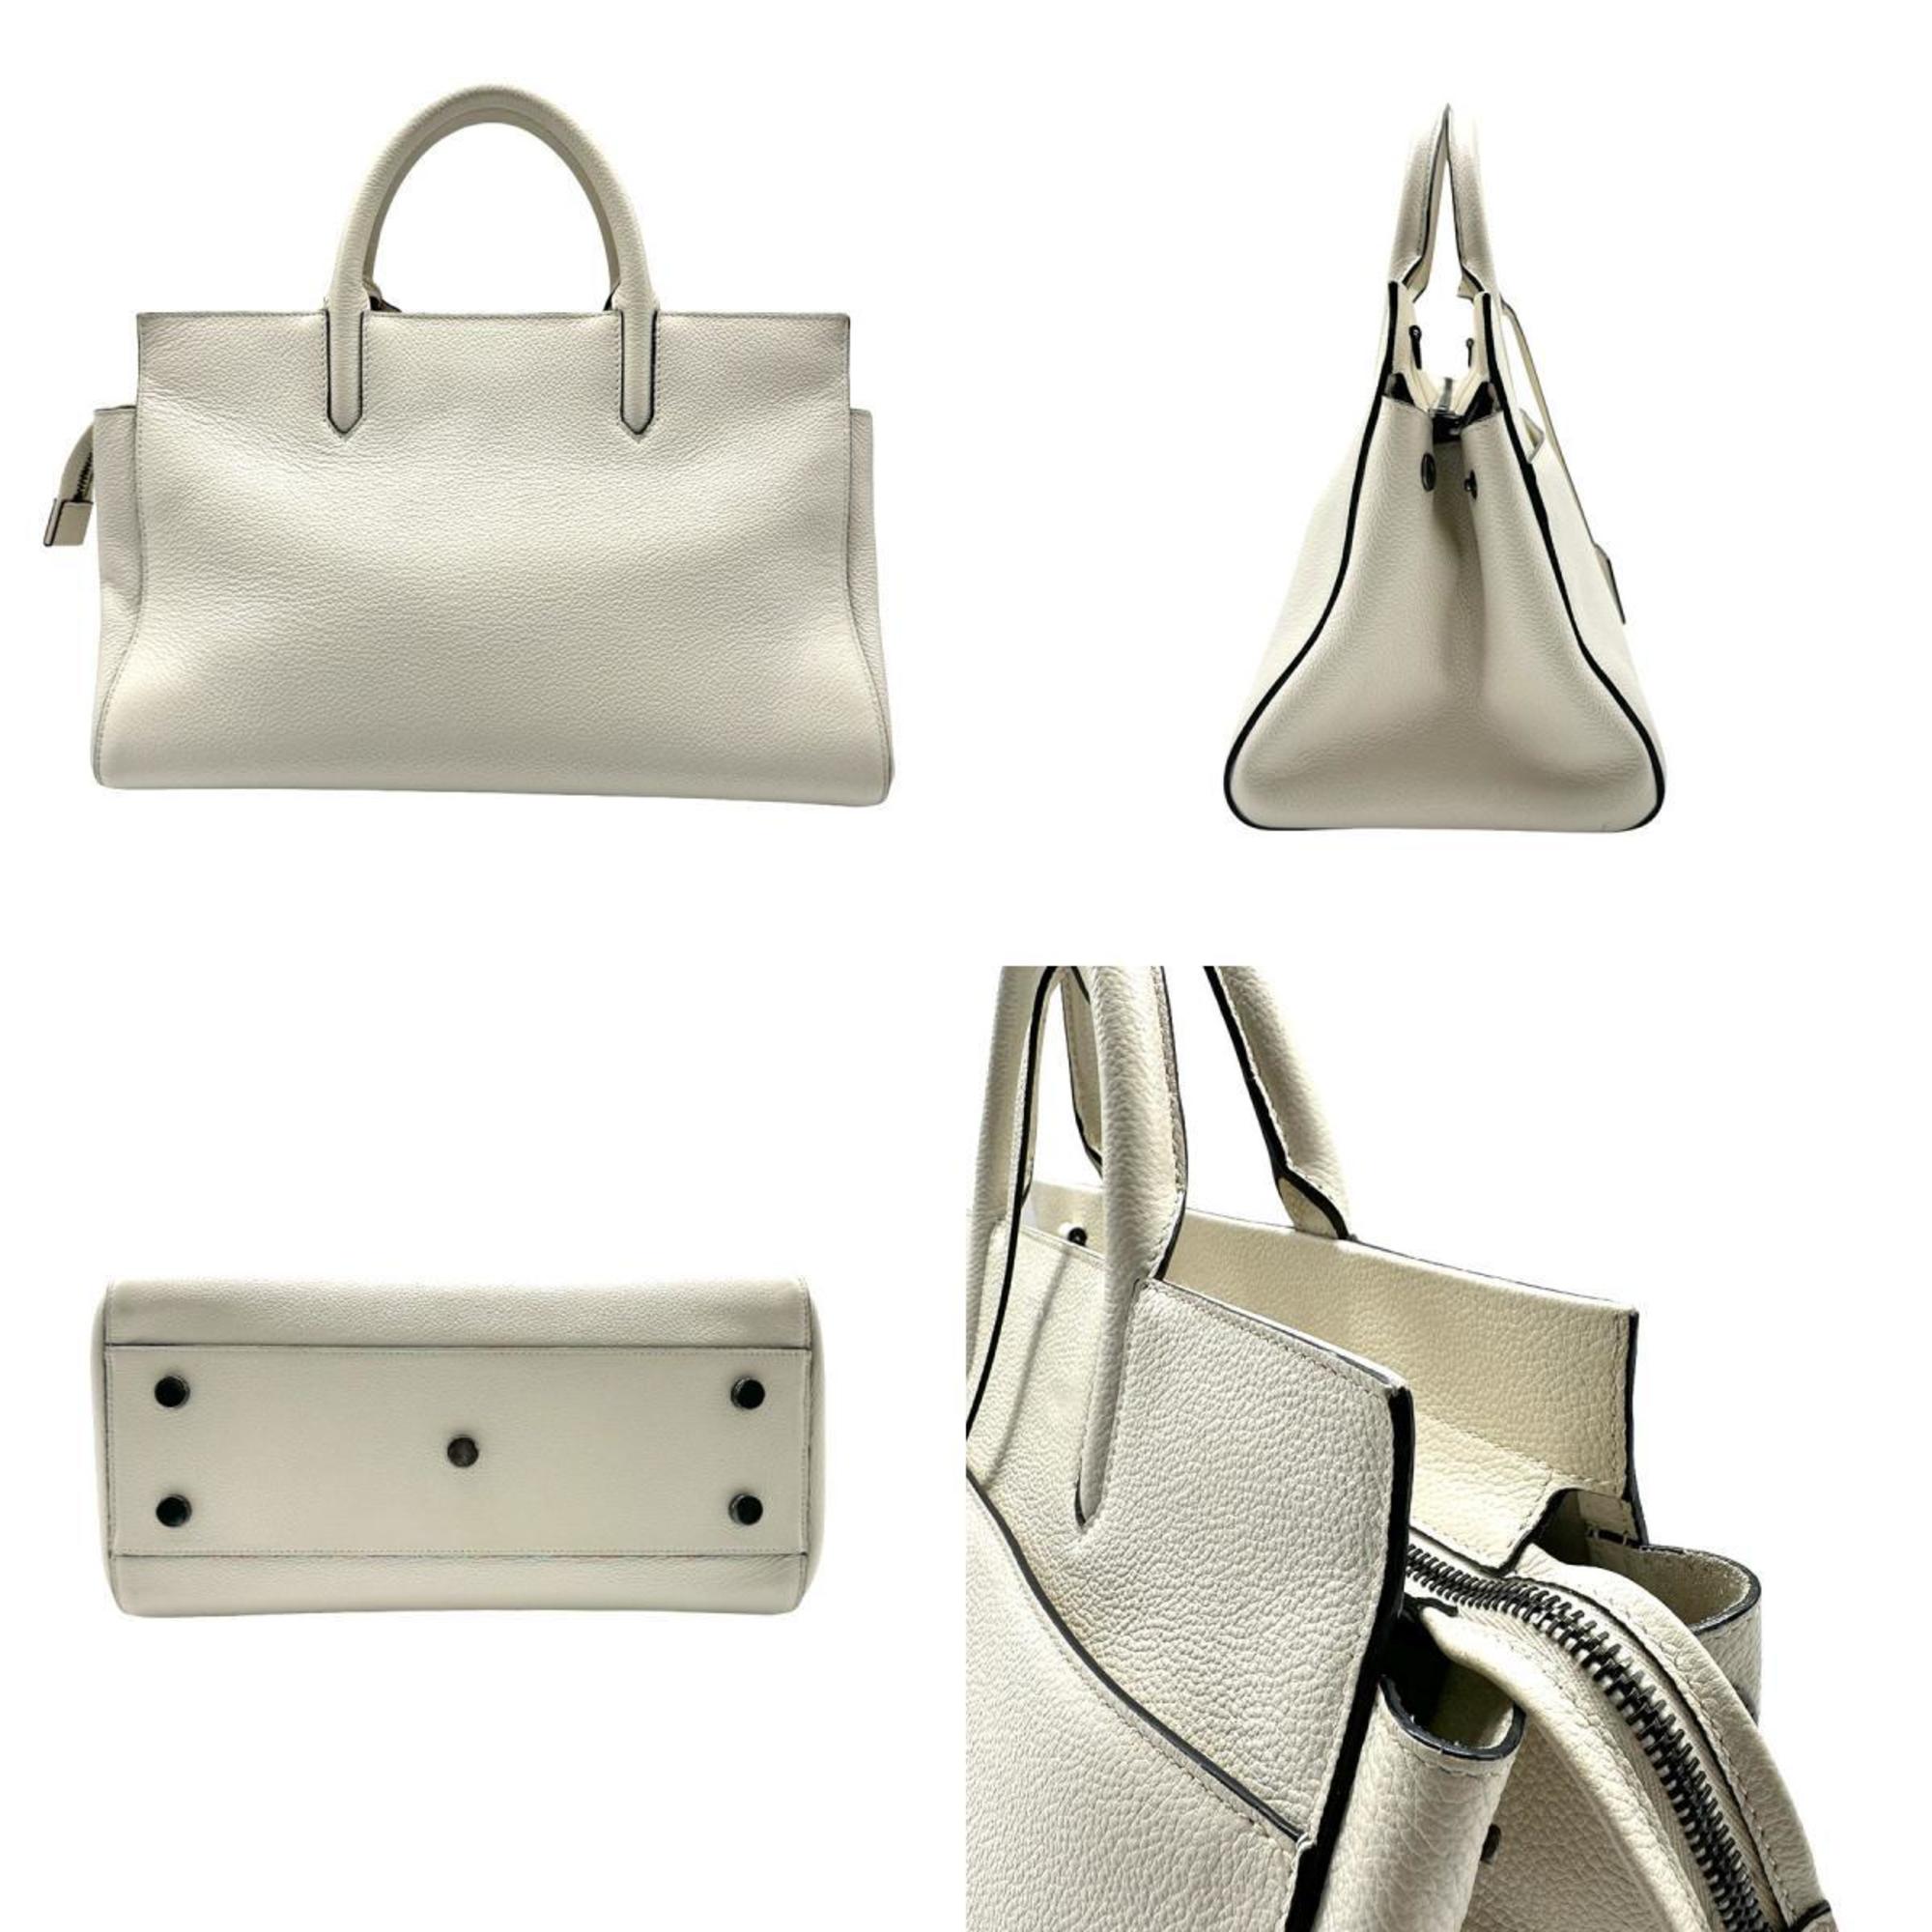 Saint Laurent SAINT LAURENT Handbag Shoulder Bag Cavalive Gauche Leather Off-White Women's z0510